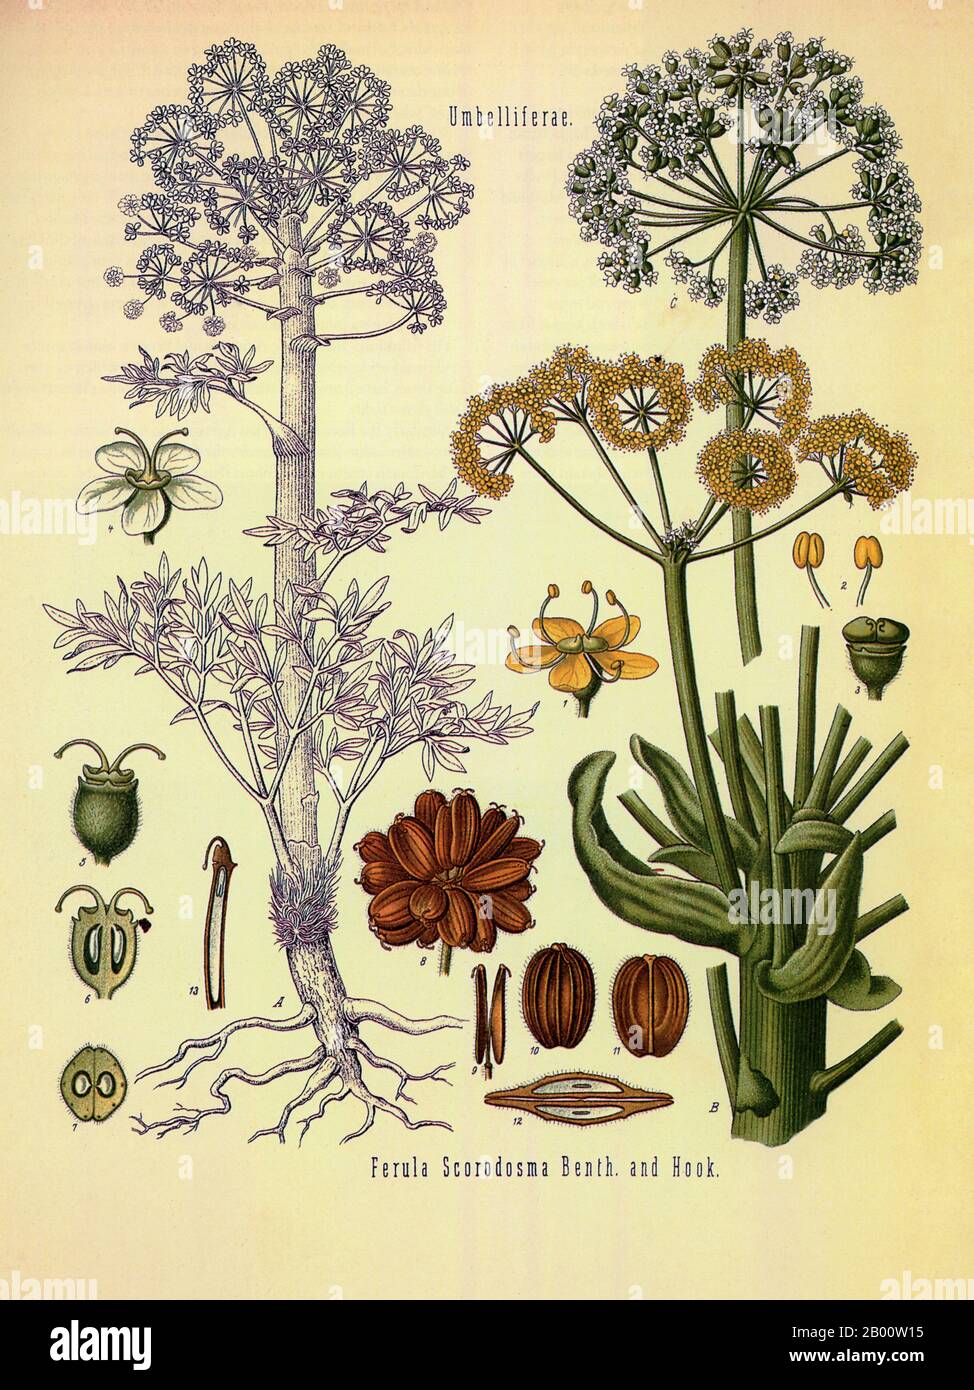 Iran: Cette illustration montre la fleur, les tiges et les racines de la plante asafoetida, nom d'espèce 'Ferula scorodosma'. Lithographie de Walther Otto Muller (1833-1887), c. 1887. Originaire de Perse et de Mésopotamie, l'usine d'asafoetida est connue pour son odeur piquante, qui lui porte le surnom de 'Dung du Diable' ou de 'Stinctive Gum'. Il est souvent vendu sous forme de poudre comme une épice ou un condiment sur les marchés asiatiques, et est souvent pris comme aide digestive pour réduire la flatulence. Banque D'Images